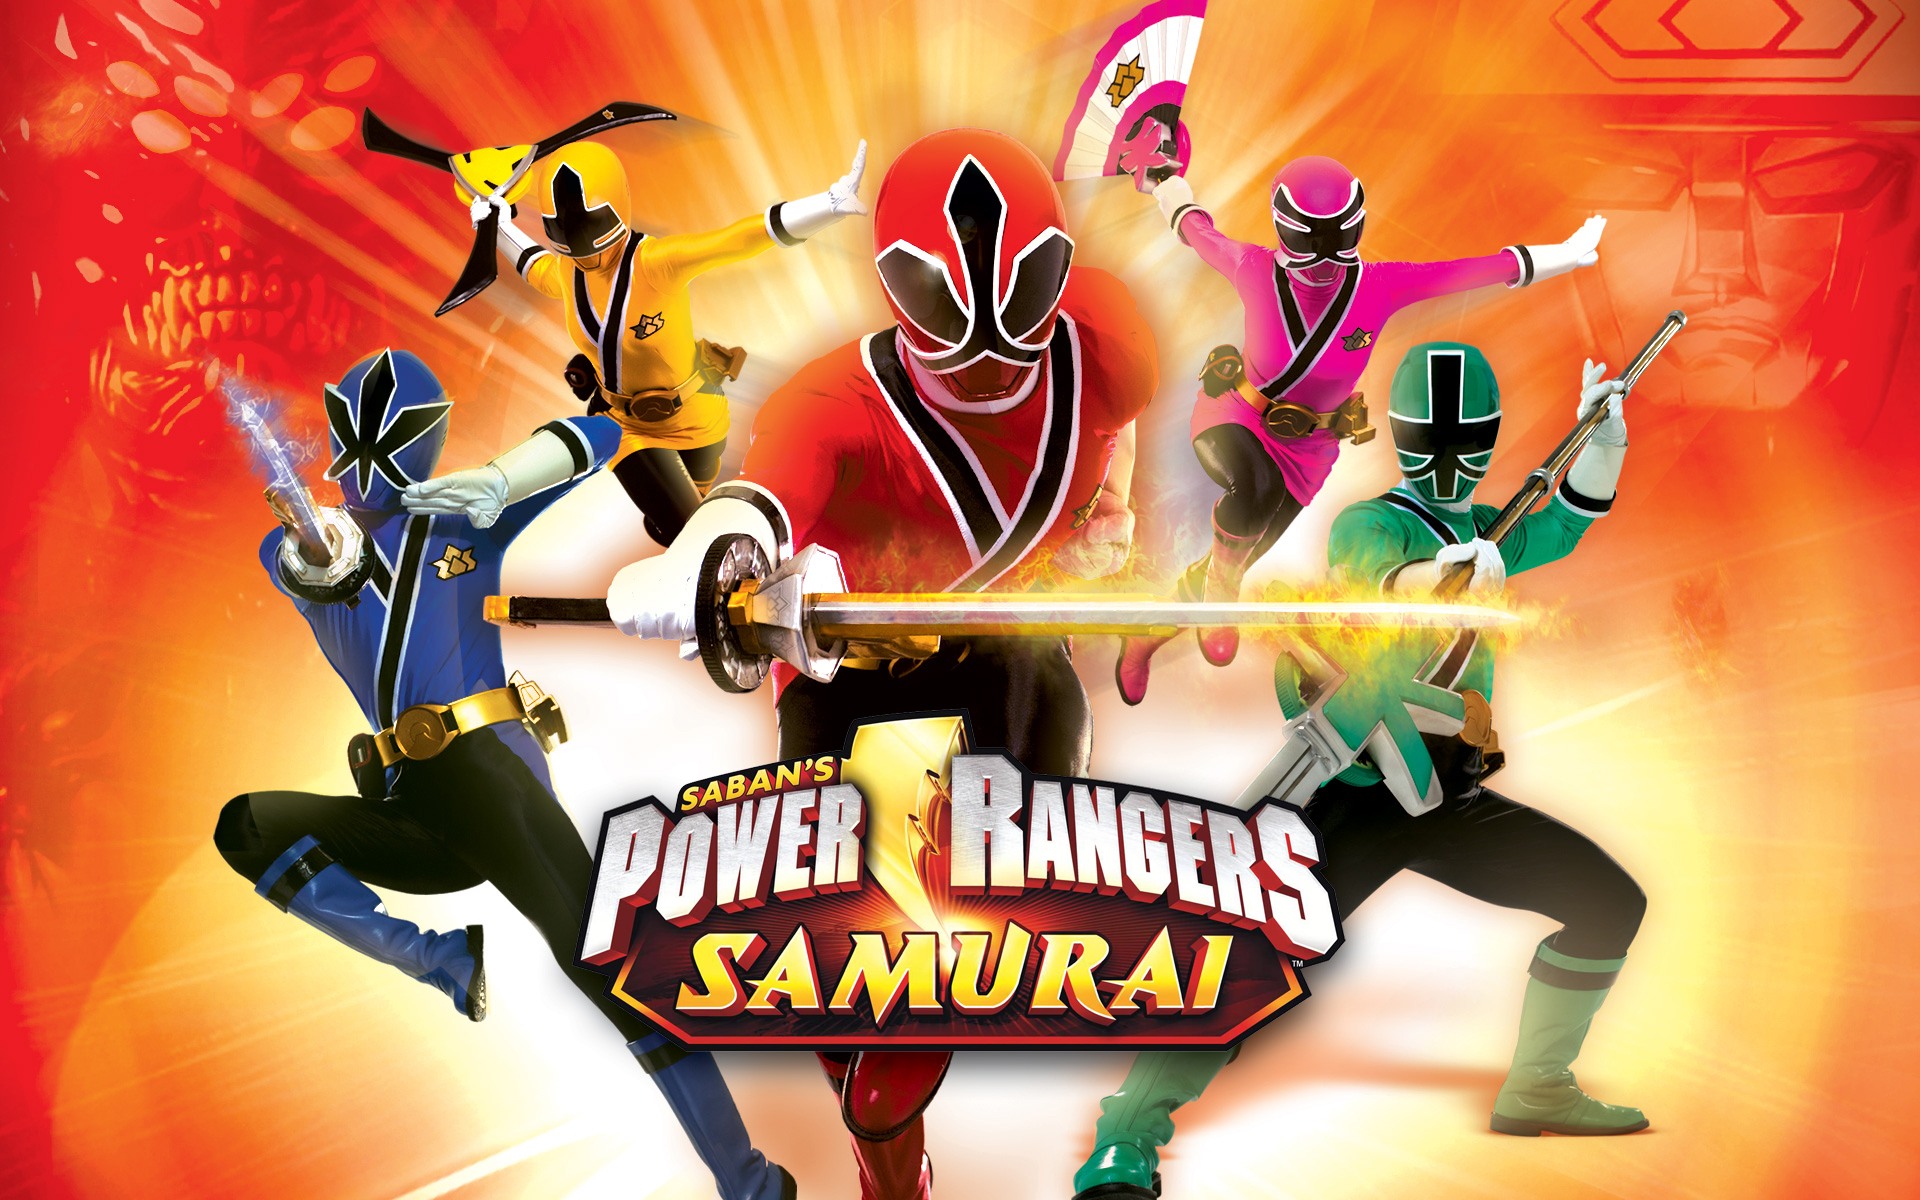 Power Rangers Wallpaper - Power Rangers Samurai , HD Wallpaper & Backgrounds